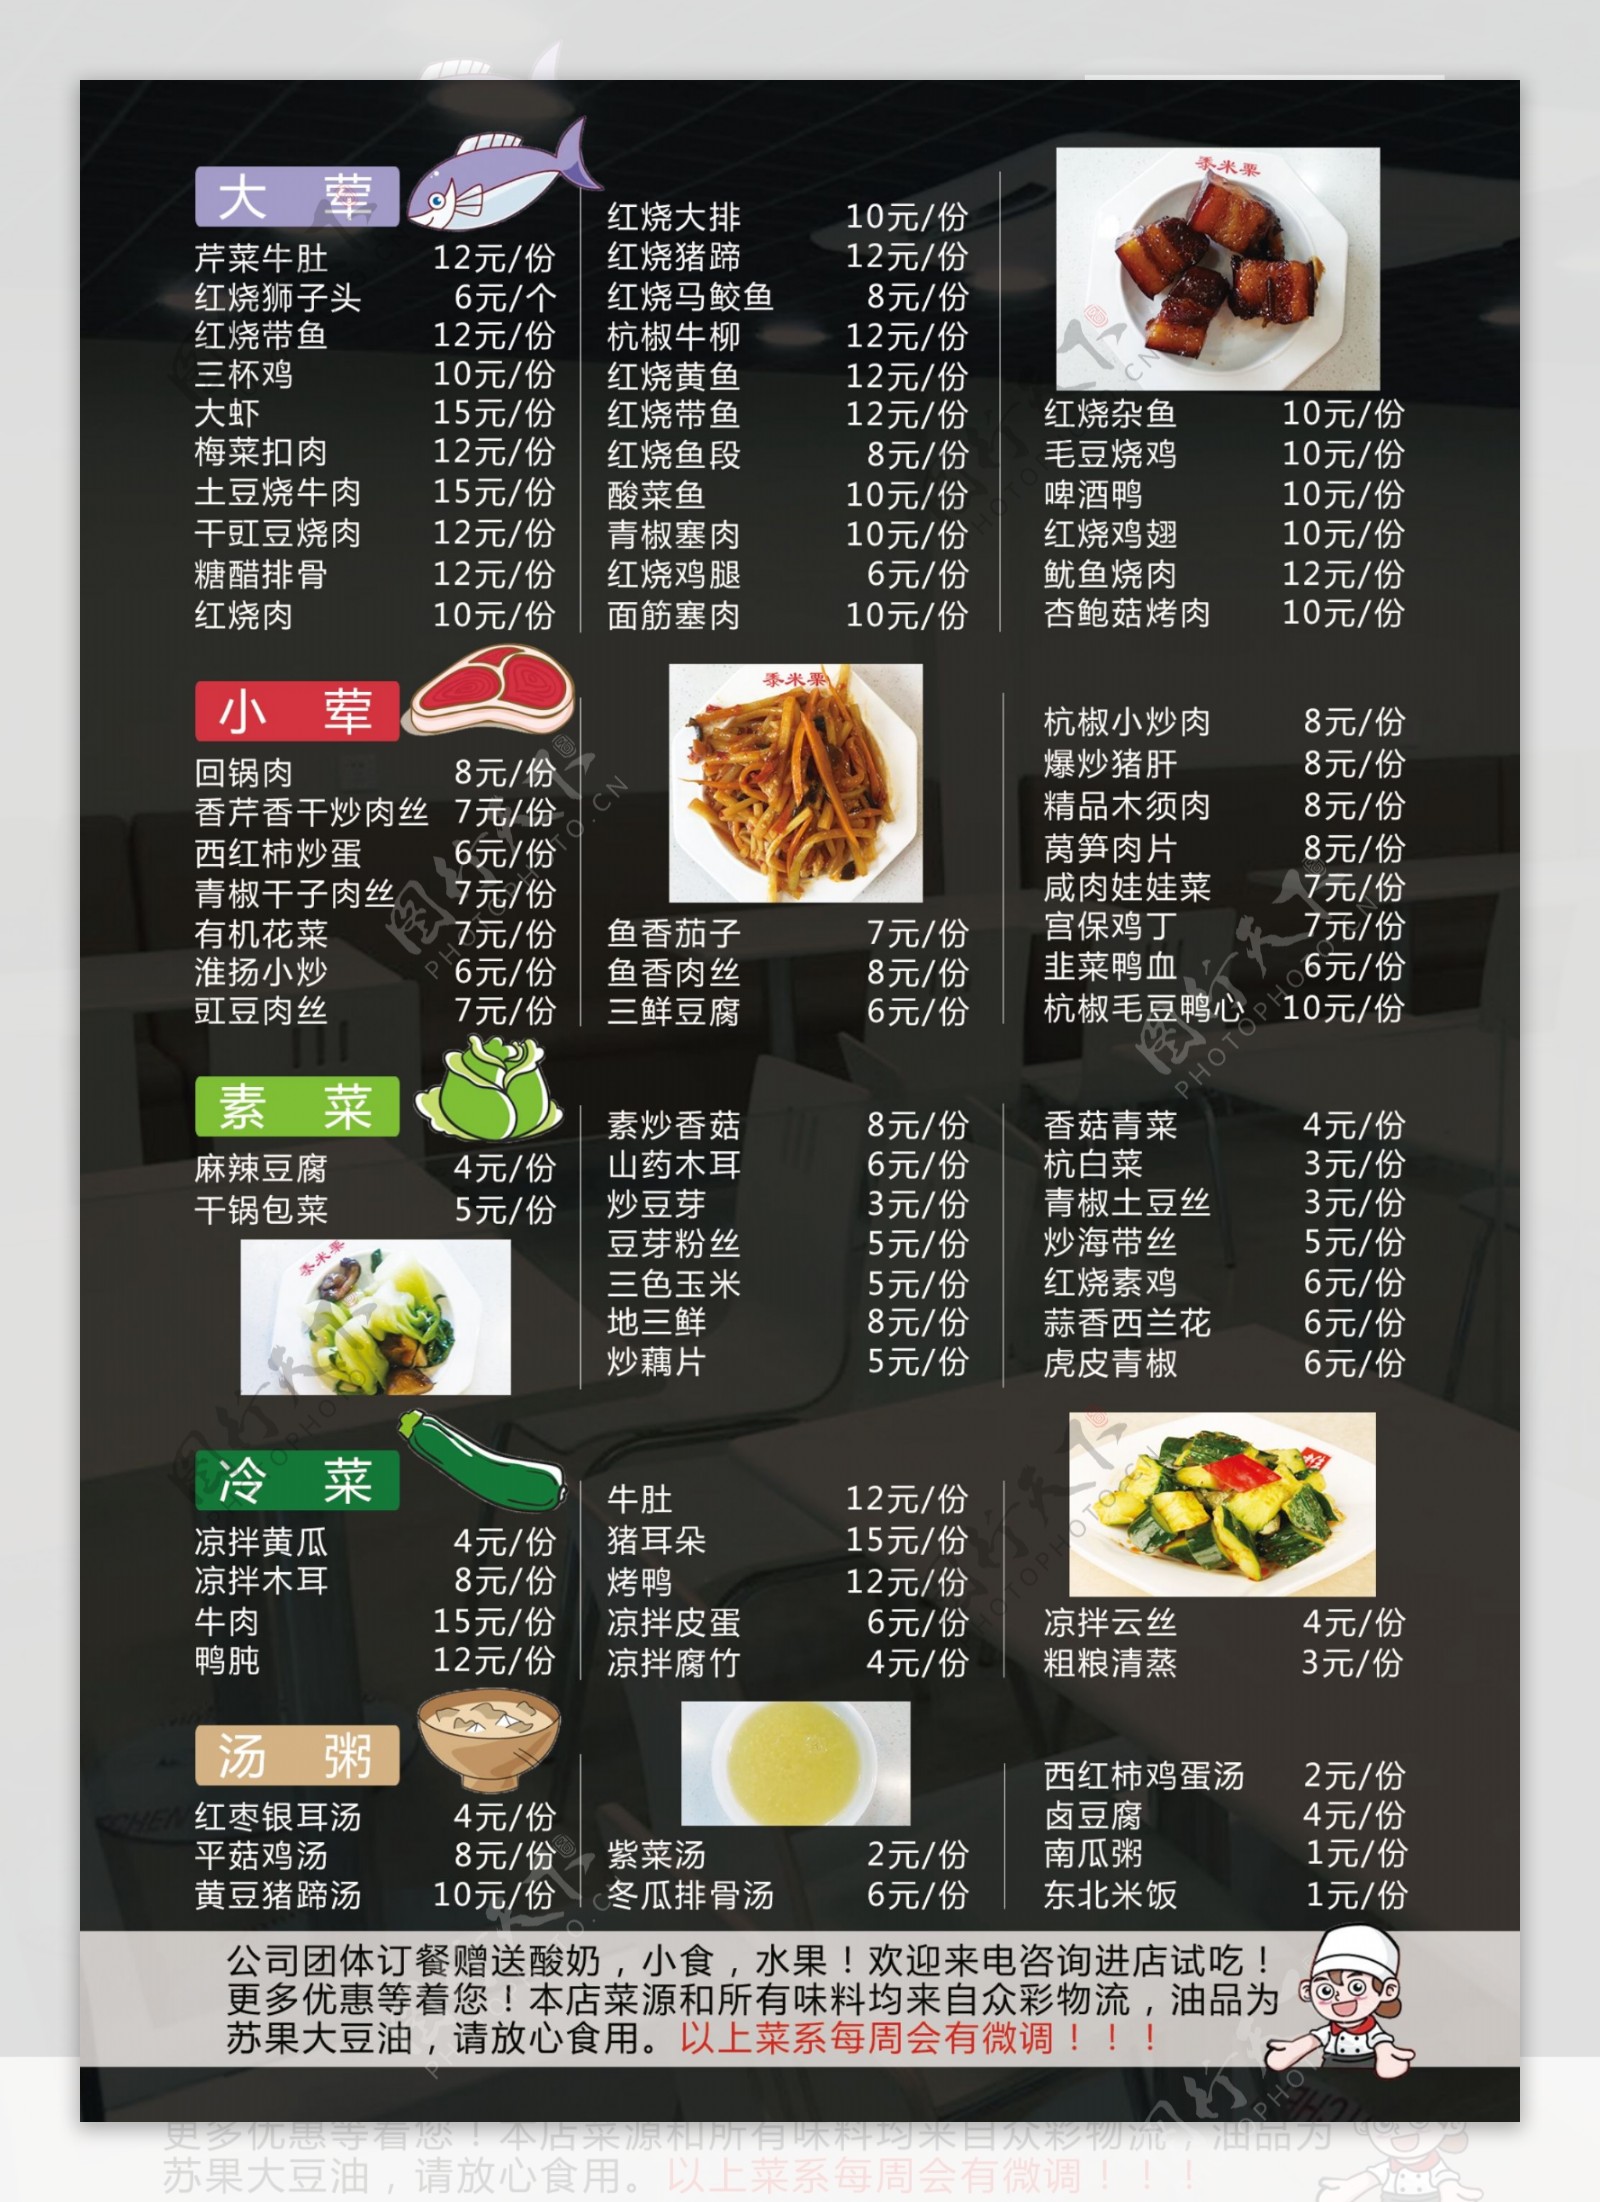 菜单菜谱宣传海报